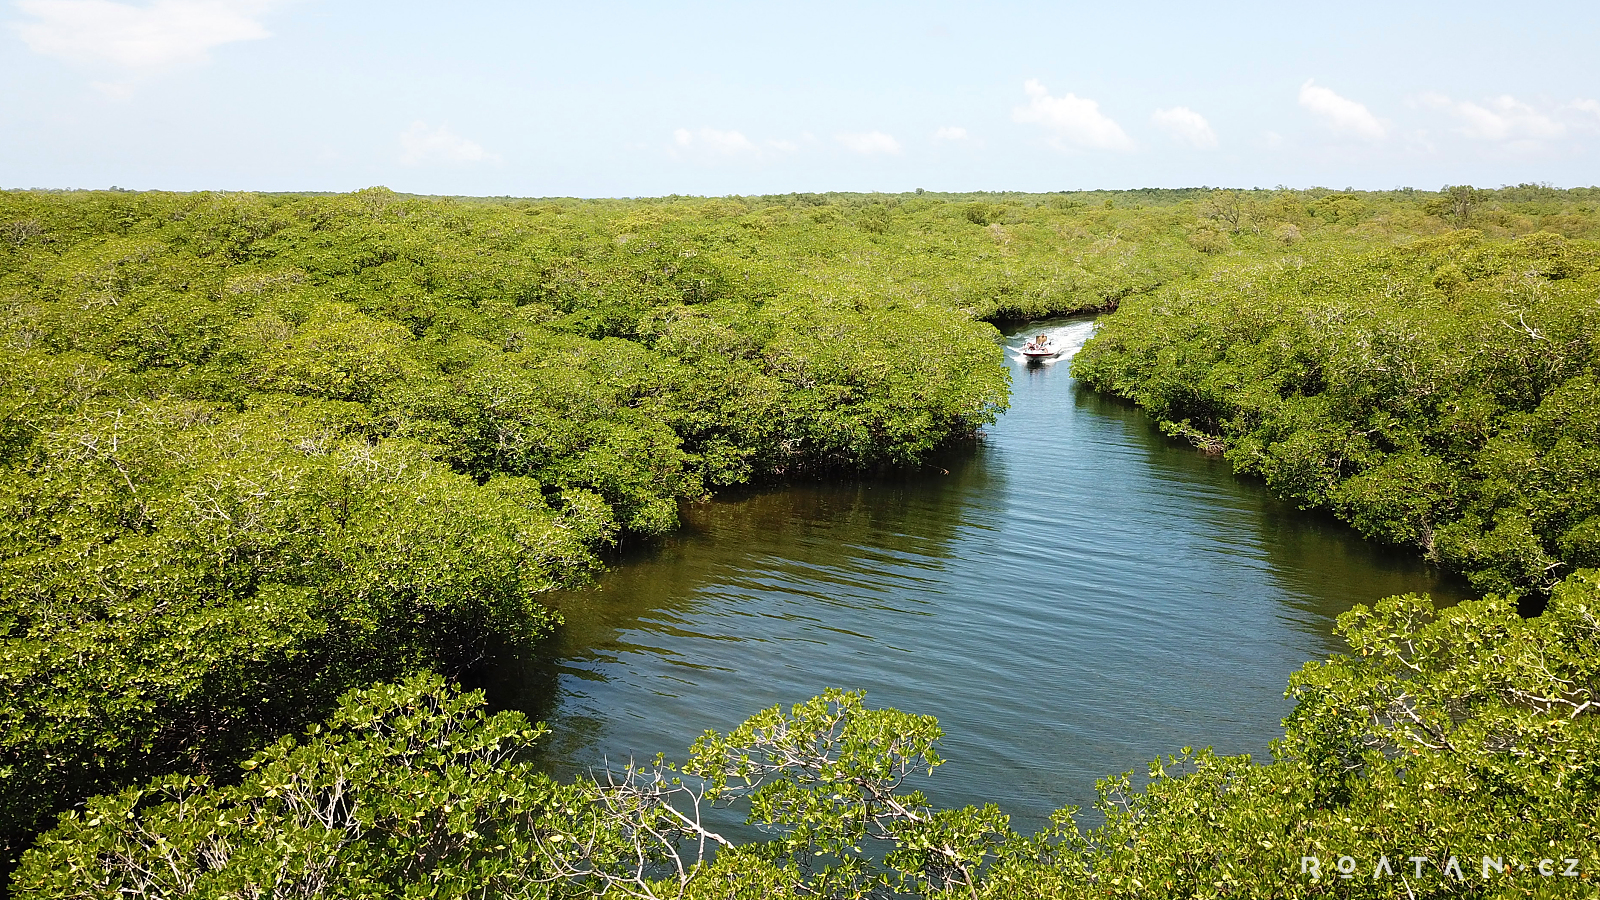 Nesmíte vynechat mangrovy